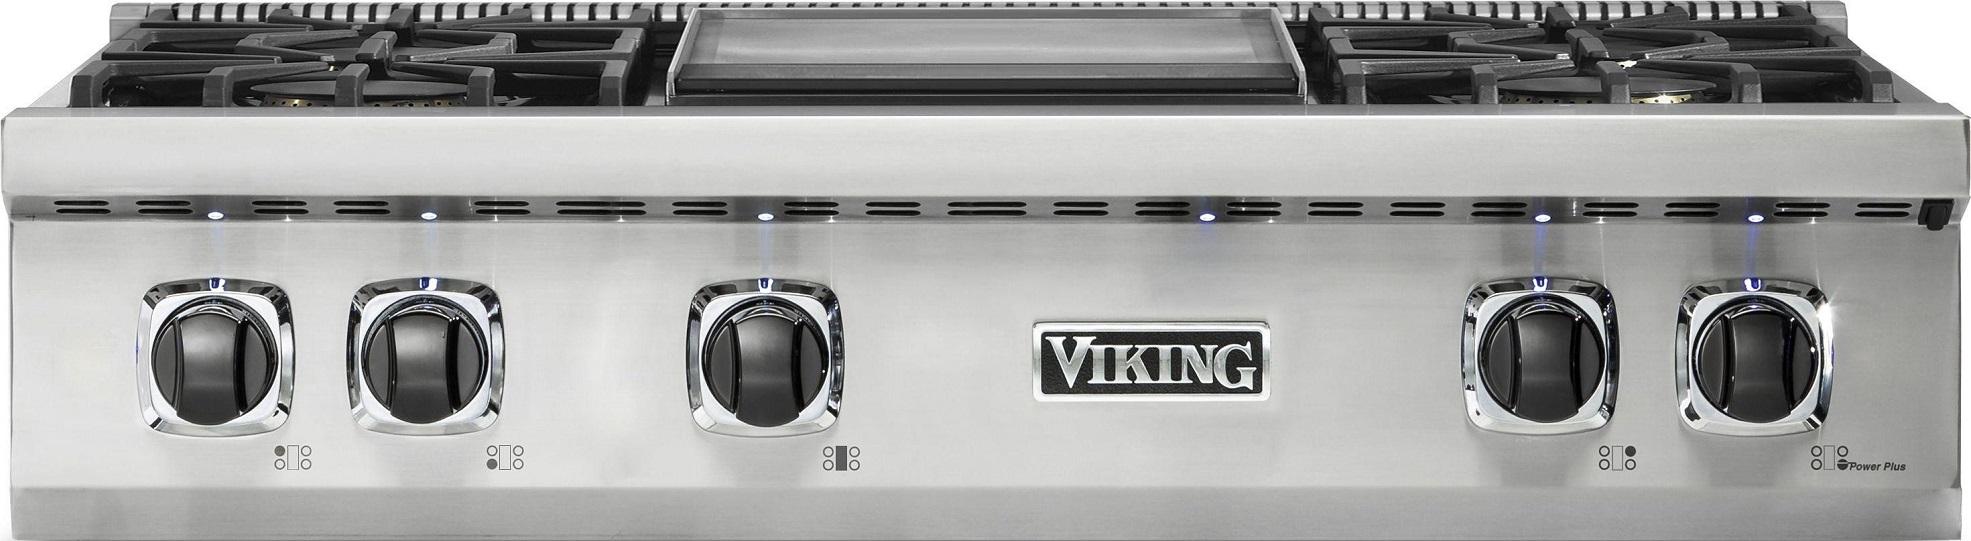 Viking VRT5364GSSLP